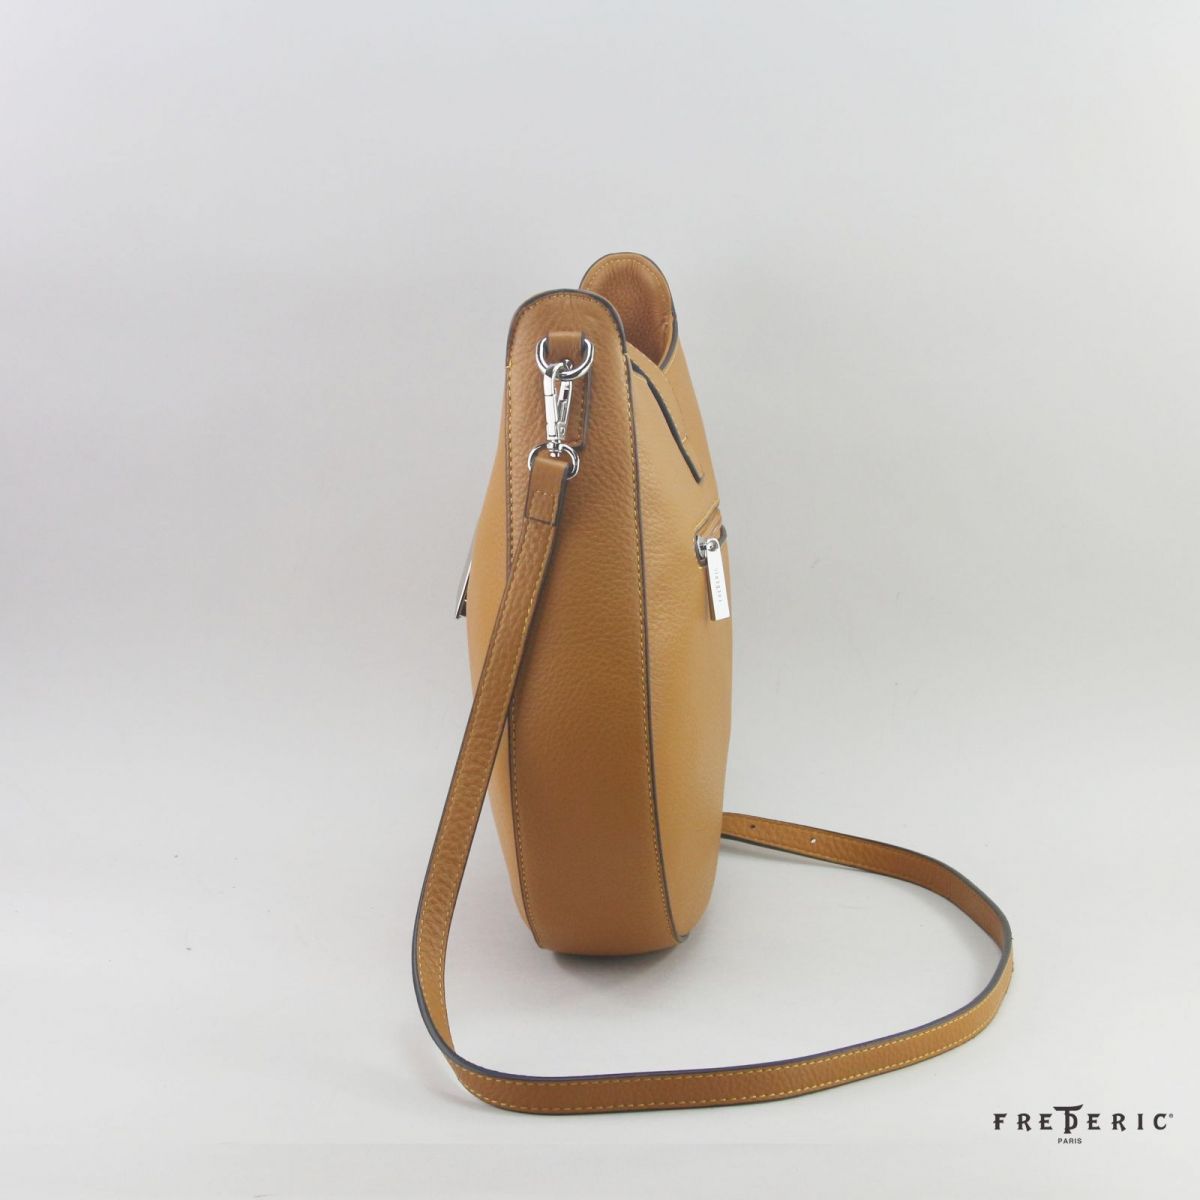 U Shape Handbag - Medium Leather Bag